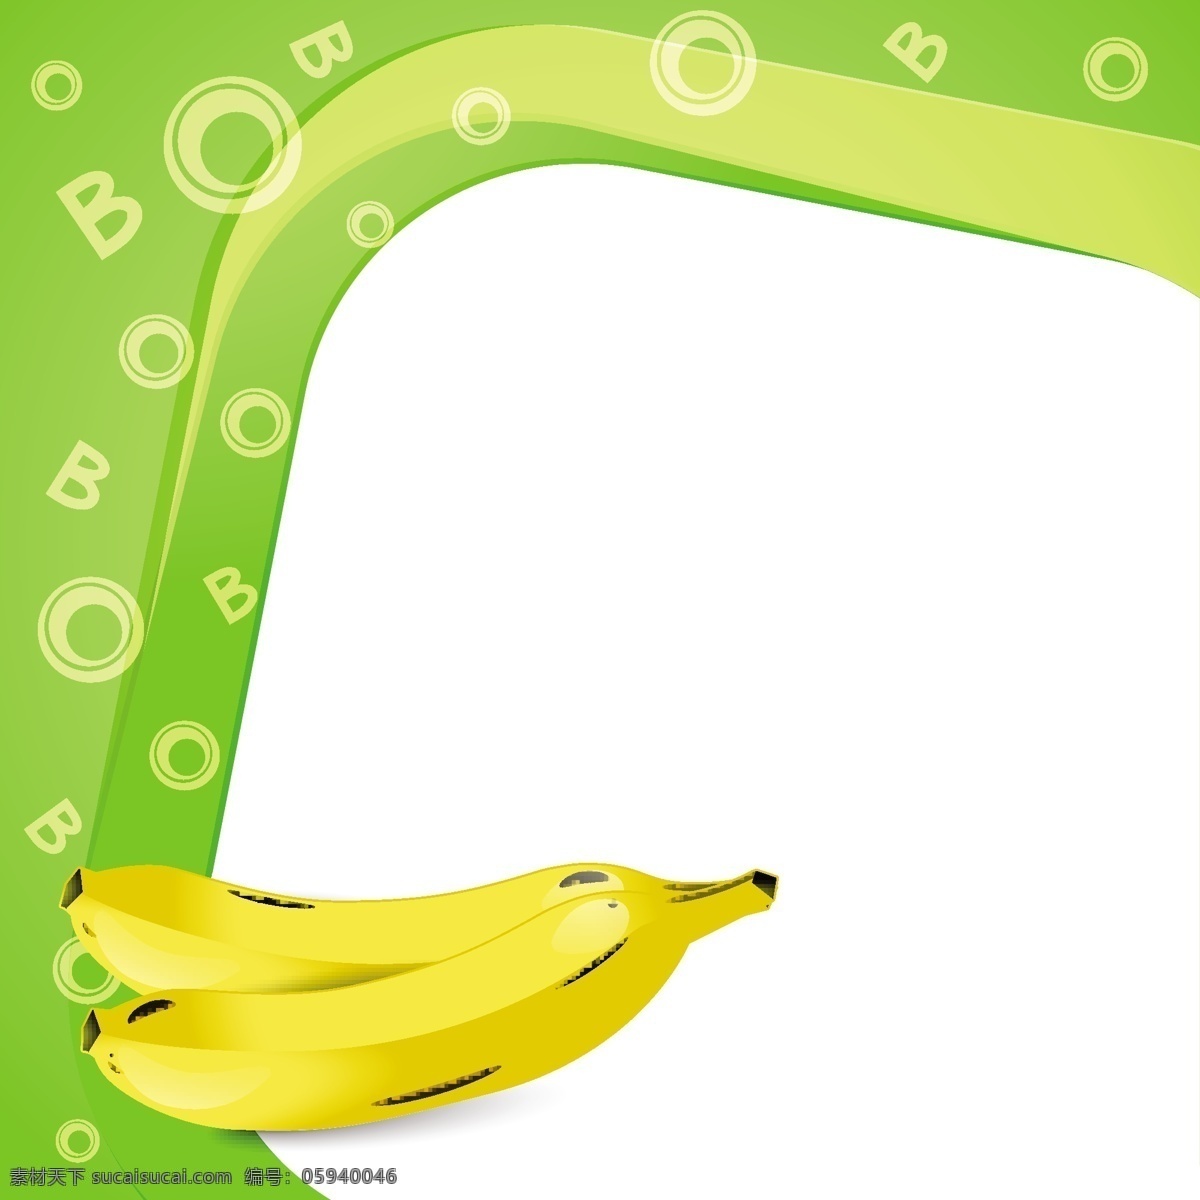 架着香蕉 背景 框架 食品 水果 自然 香蕉 健康 饮食 健康食品 自然背景 现实 白色